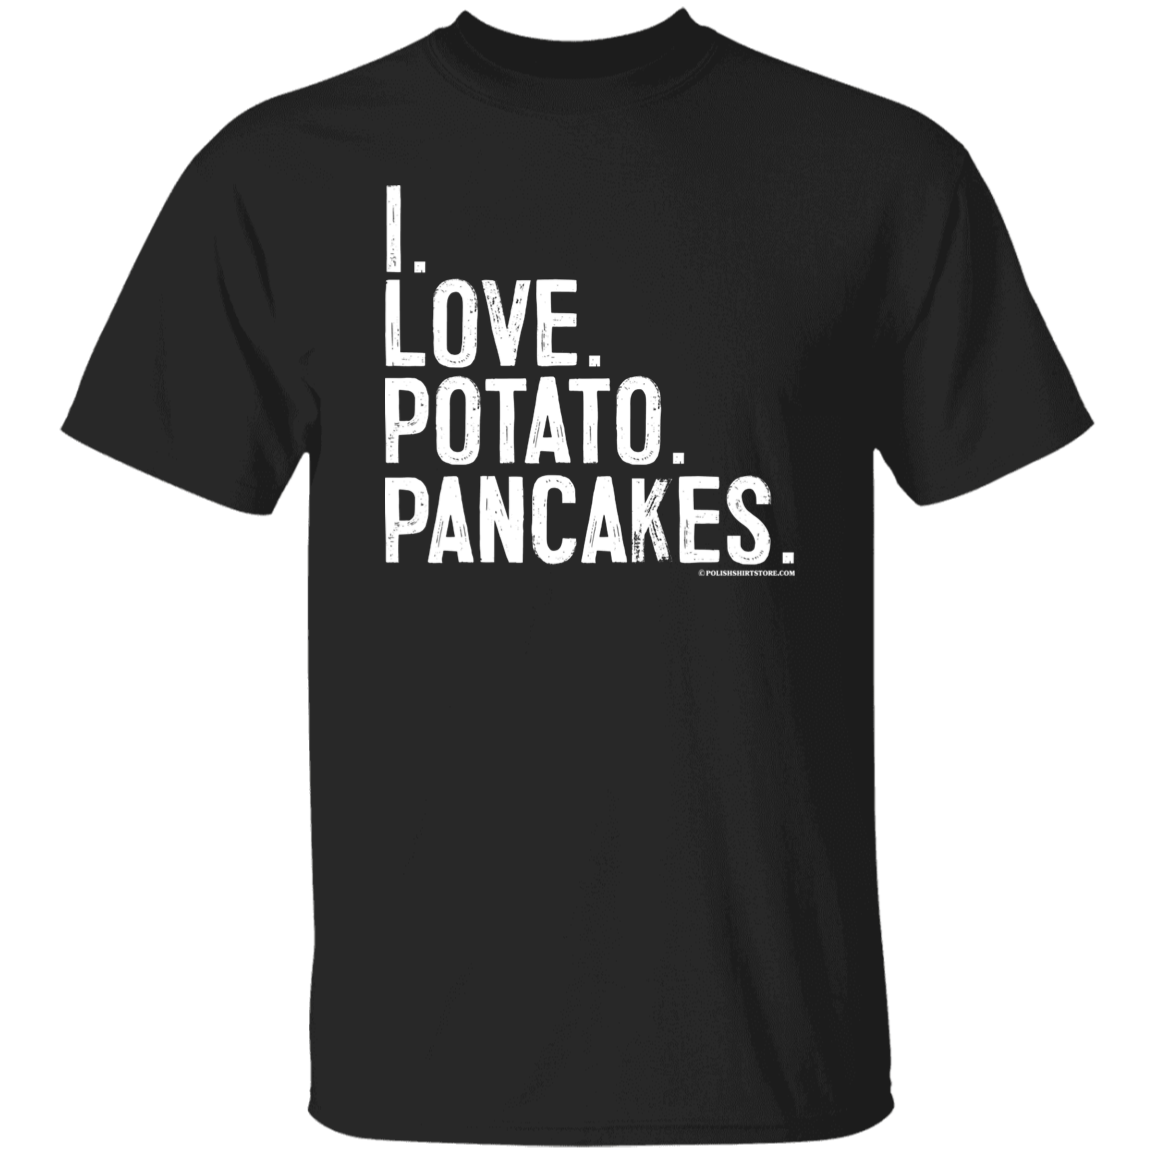 I Love Potato Pancakes Apparel CustomCat G500 5.3 oz. T-Shirt Black S